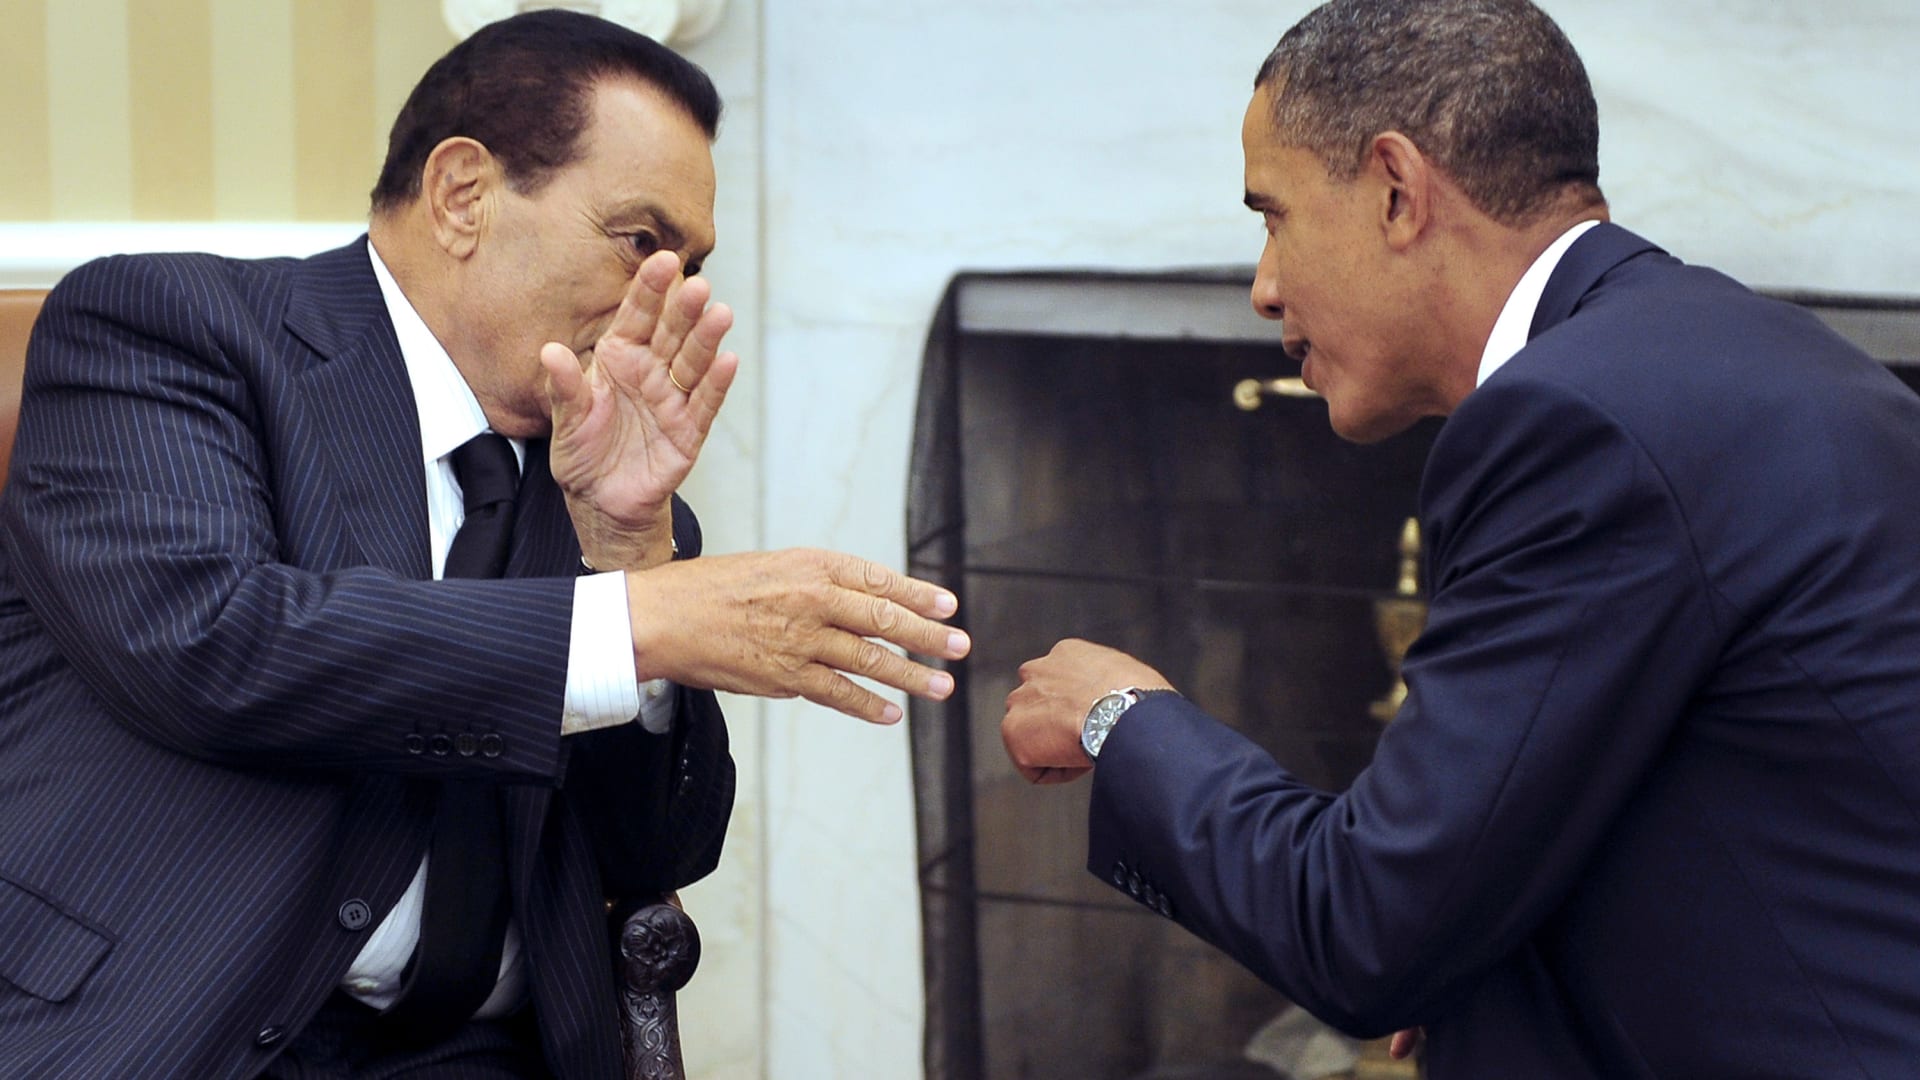 أوباما يتحدث عن حسني مبارك: الإدارات الأمريكية تغاضت عن الفساد وانتهاكات حقوق الإنسان في عهده